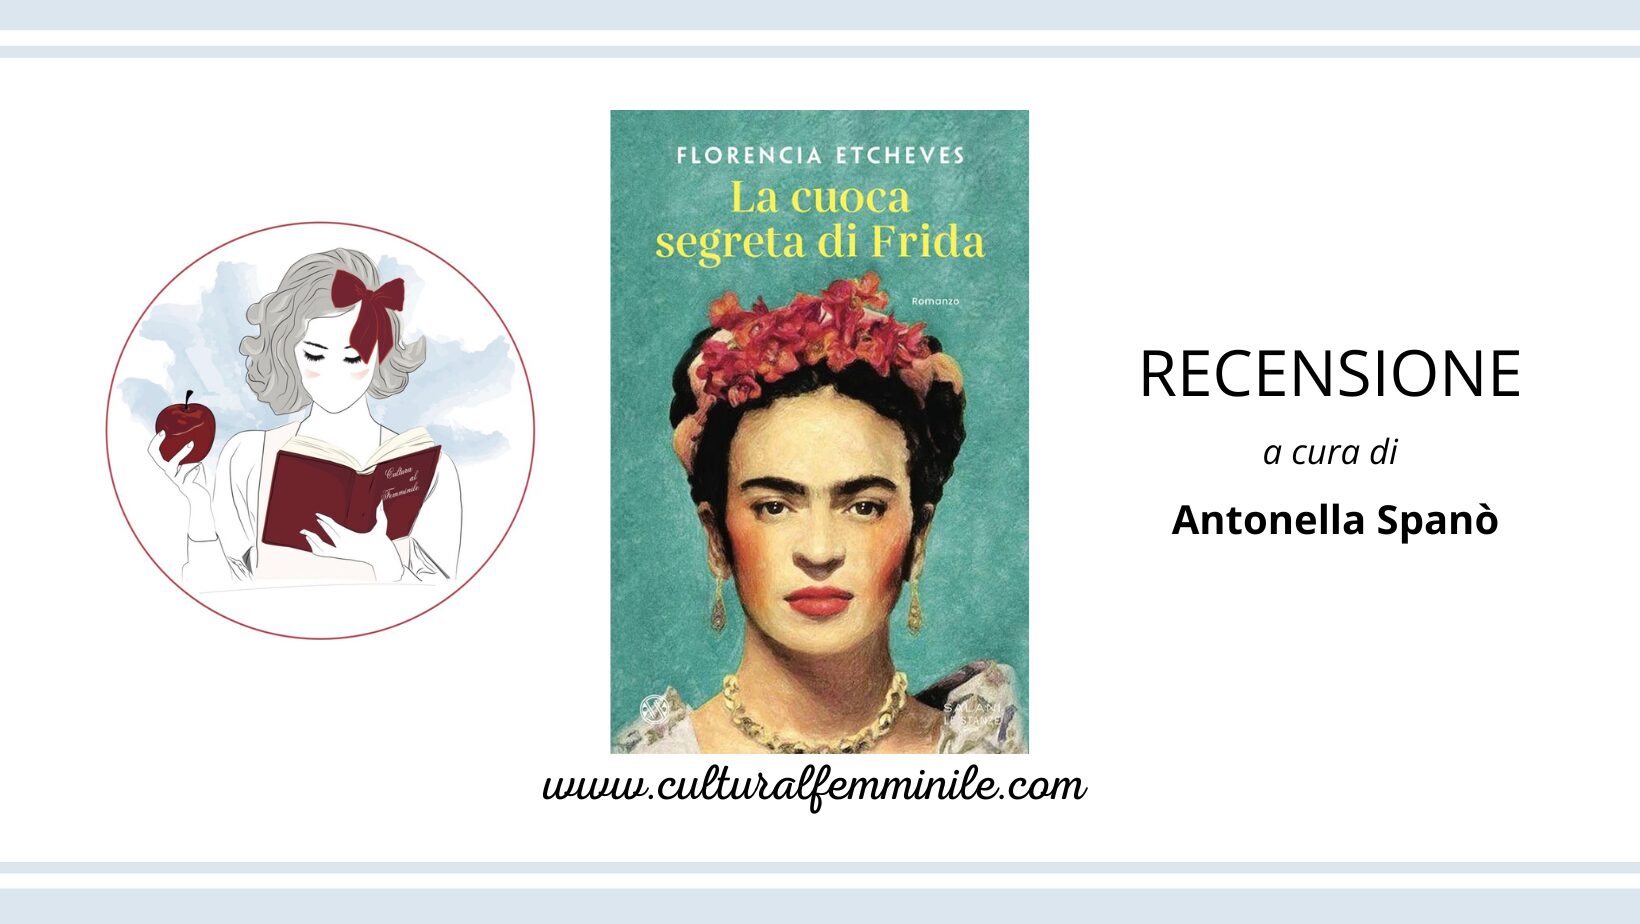 La cuoca segreta di Frida di Florencia Etcheves